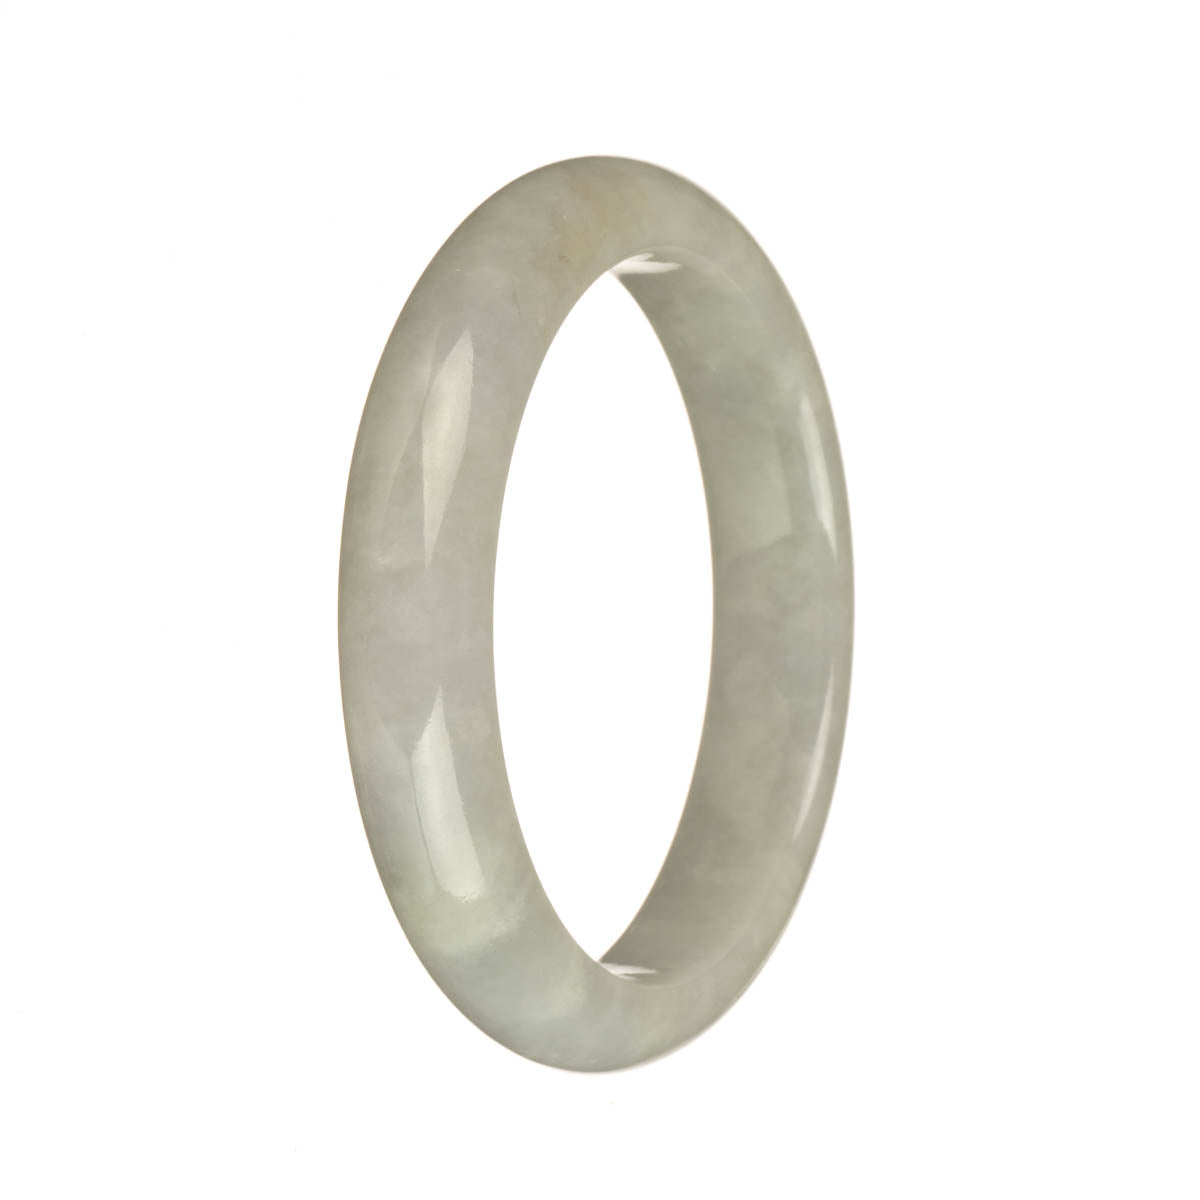 56.6mm Greyish White Jade Bangle Bracelet